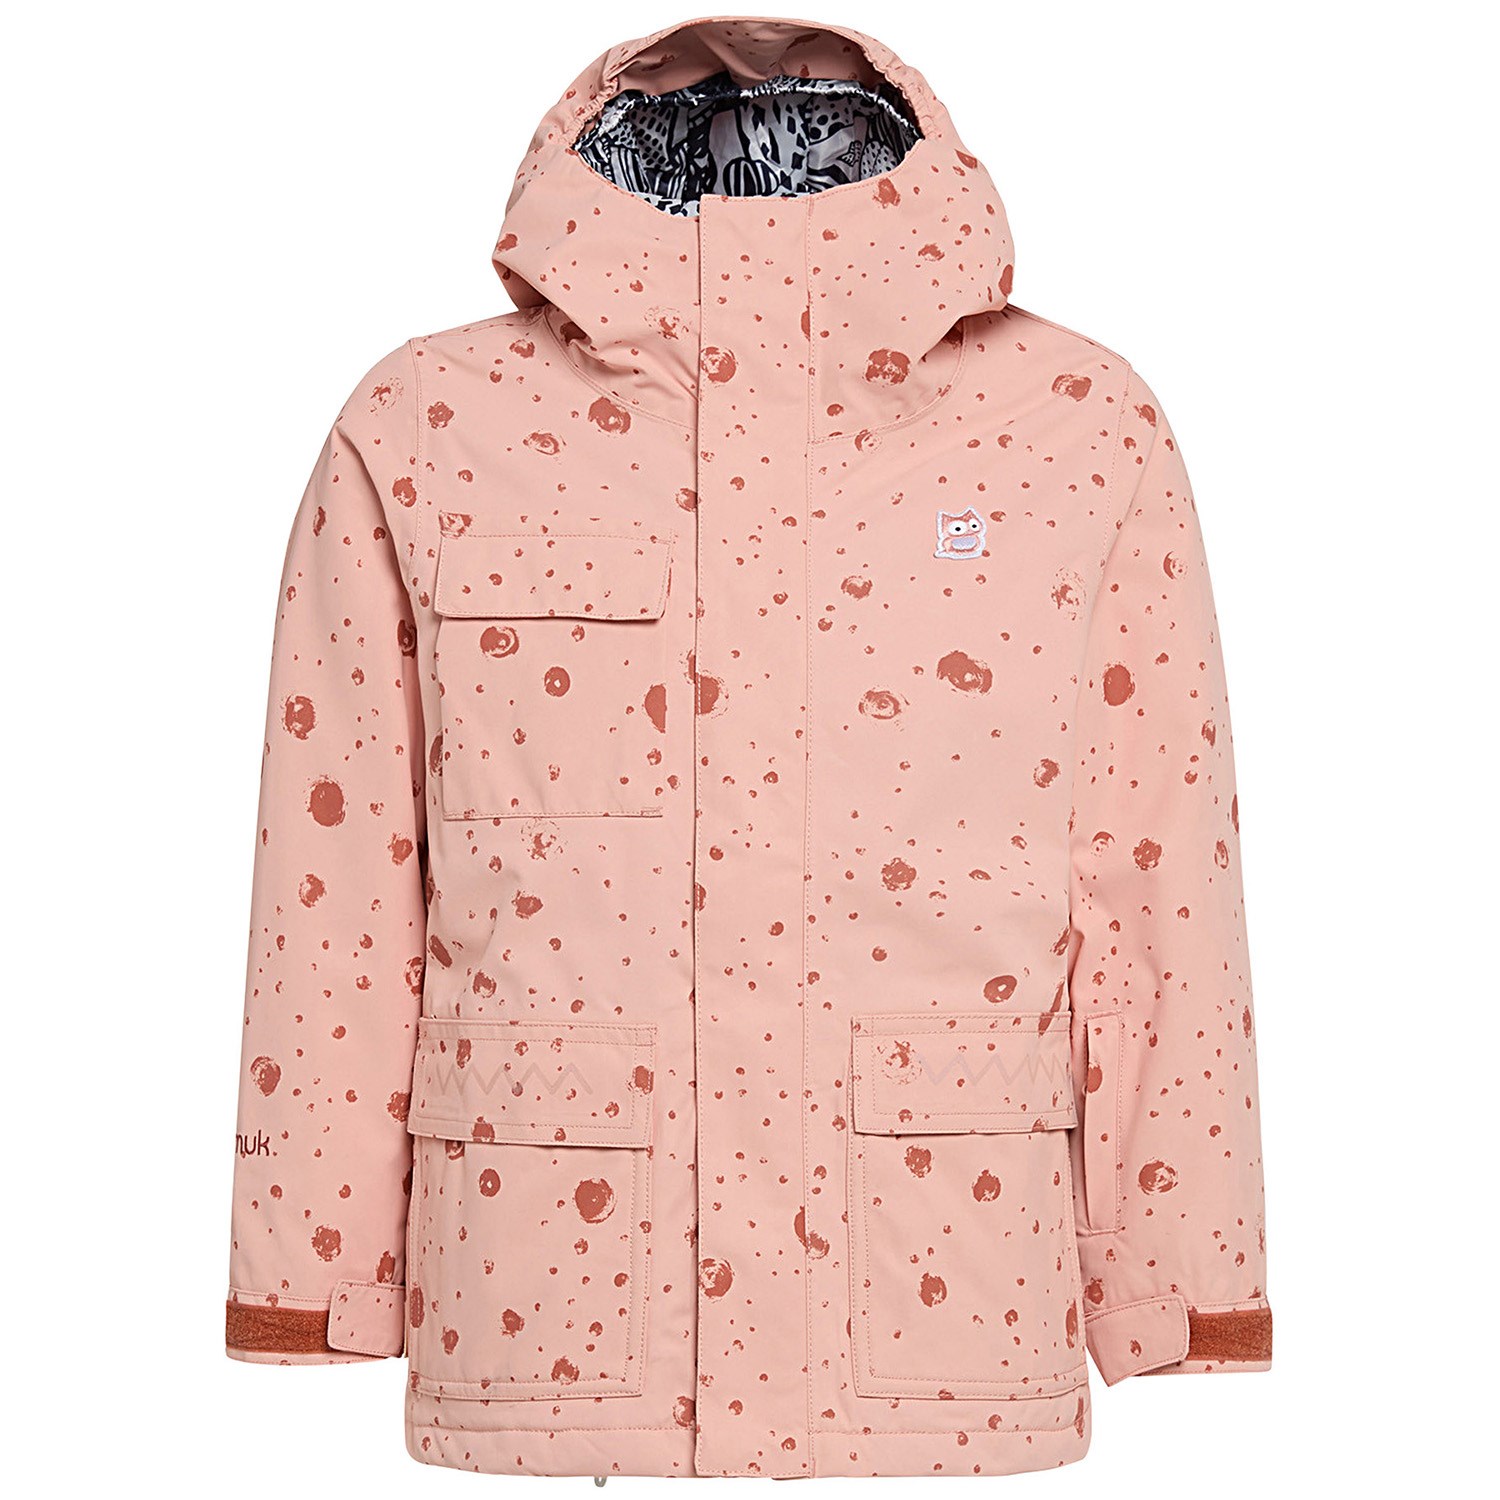 Куртка namuk Mission Snow Galaxy, цвет Sunset Rose биофлисовая куртка avan galaxy для малышей namuk цвет teddy sunset rose